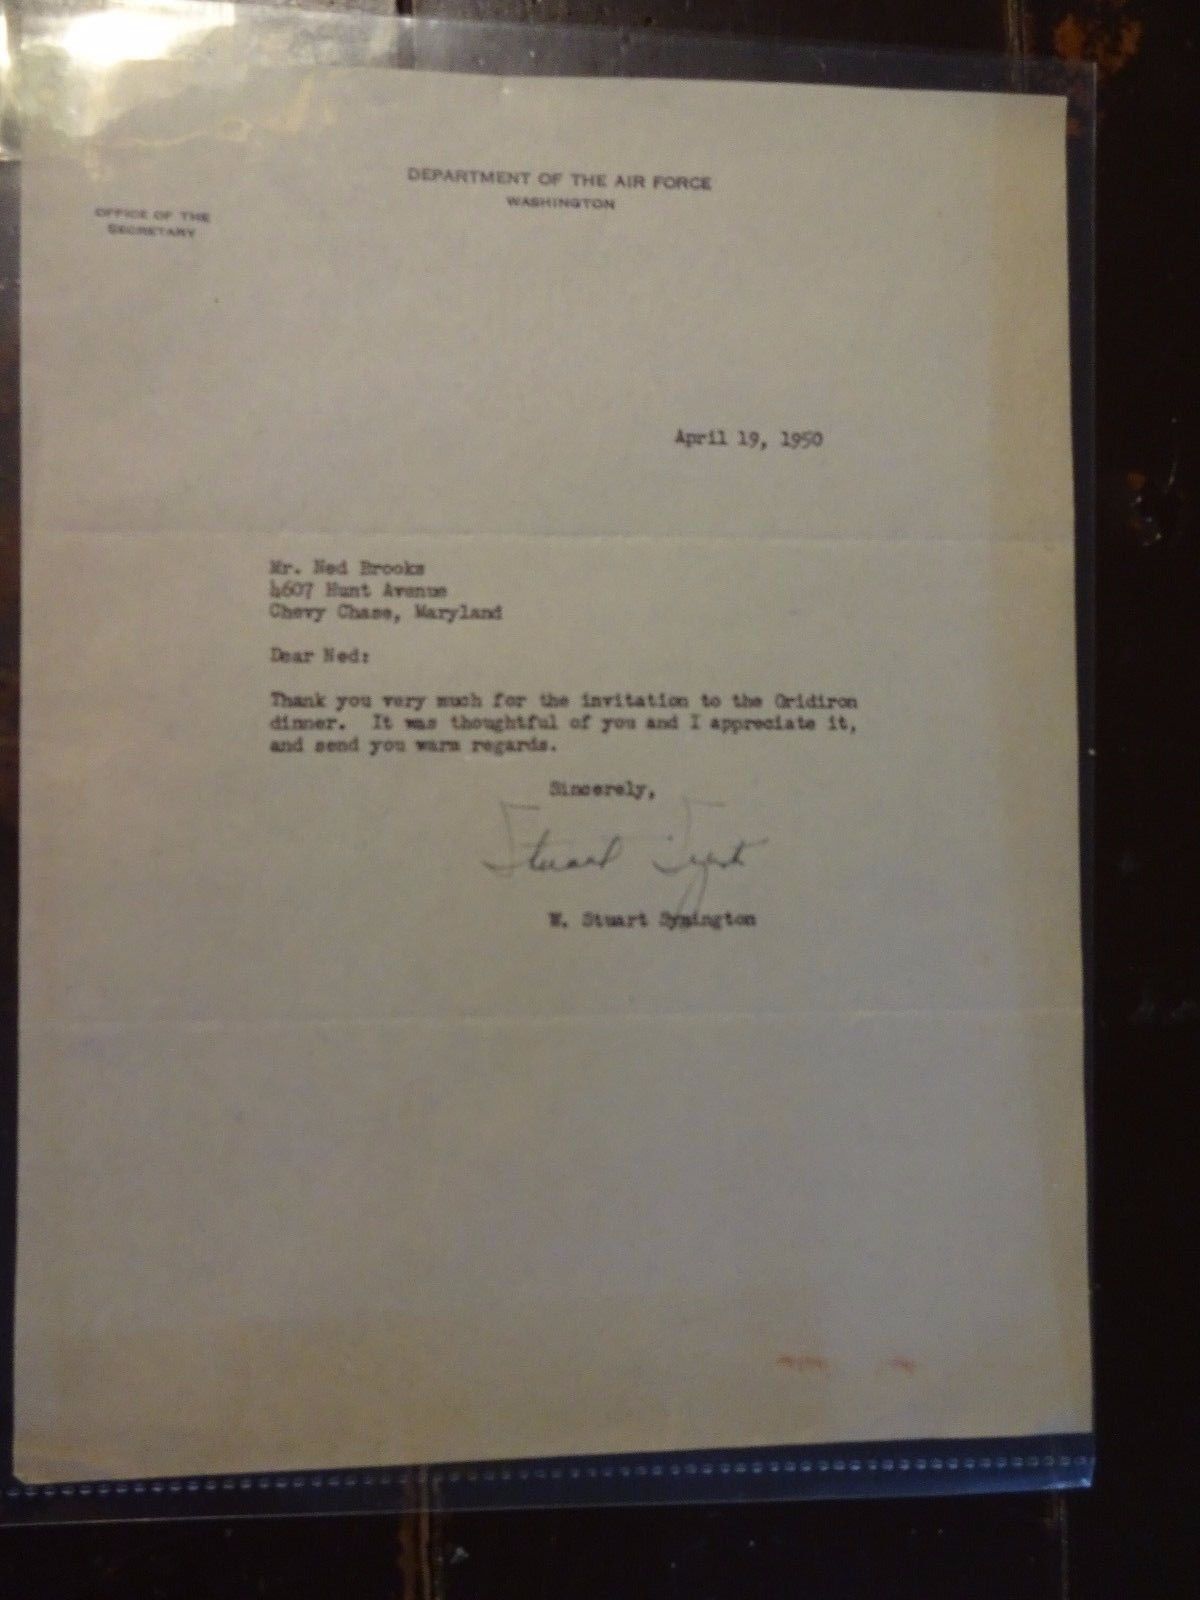 W. Stuart Symington ORIGINAL TYPED Letter to Ned Brooks - April 19, 1950